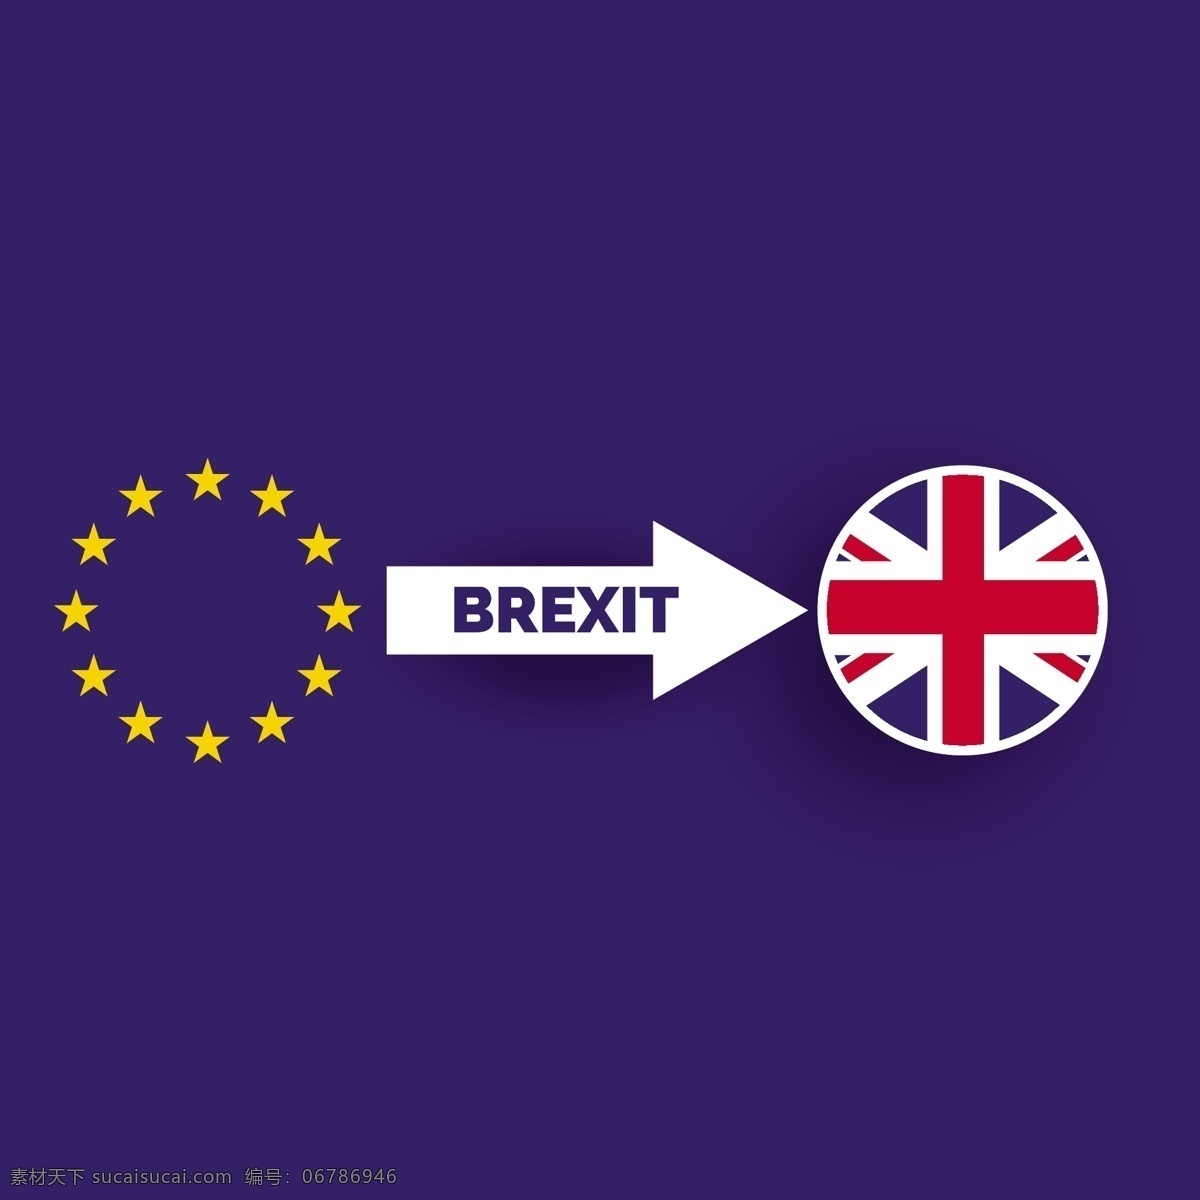 英国退出欧盟 背景 世界 国旗 金融 欧洲 英语 经济 国家 投票 欧元 退出 英国 欧盟 政府 团结 再见 王国